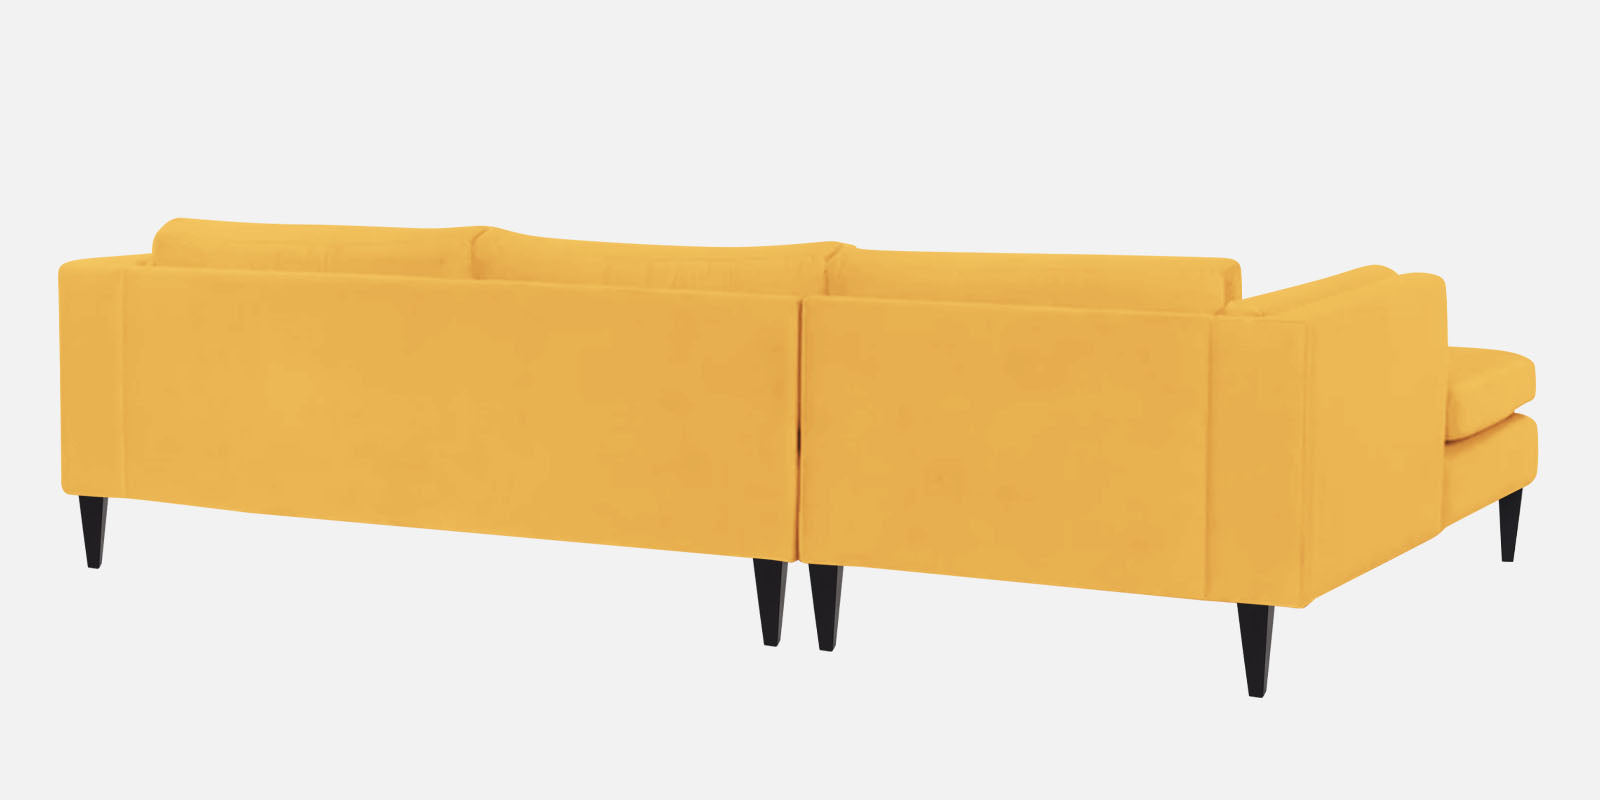 Jasper Velvet LHS Sectional Sofa (3+Lounger) in Turmeric yellow Colour